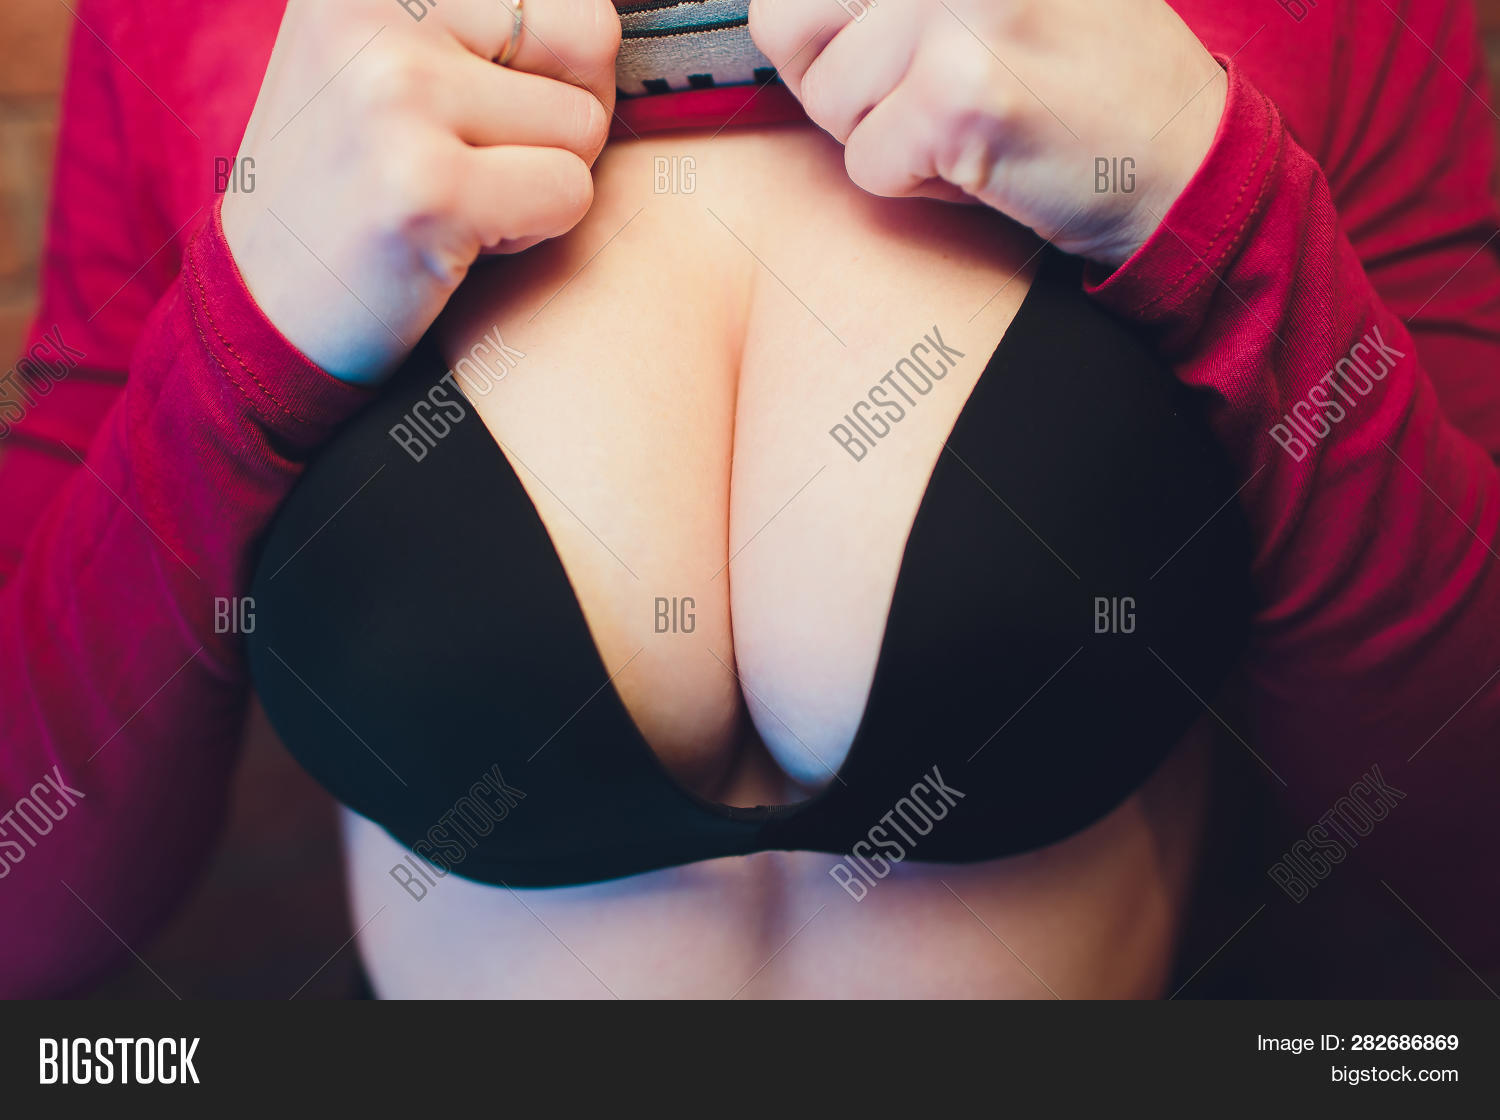 benjamin velez share sexy big tit woman photos